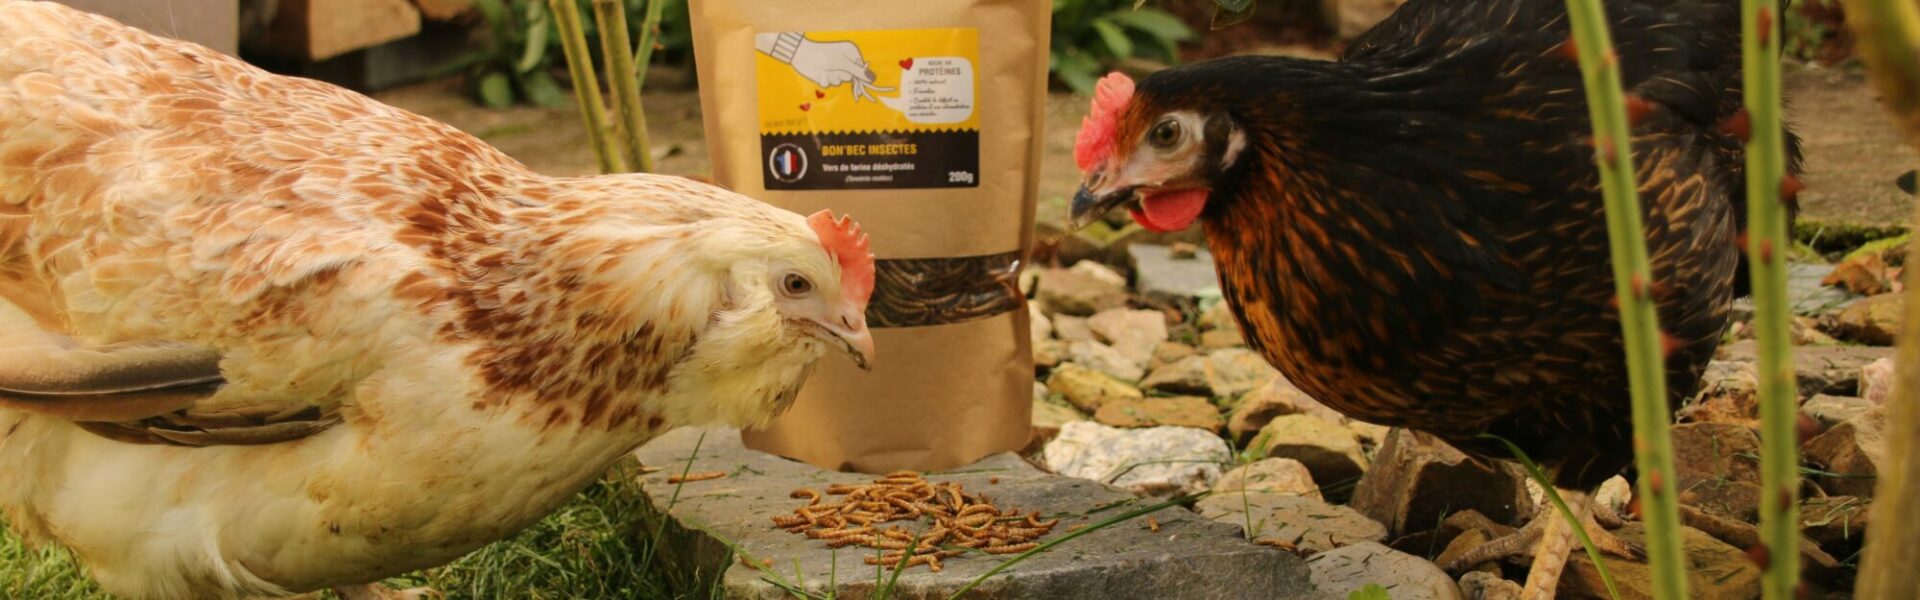 Vers de farine pour les poules : comment les élever